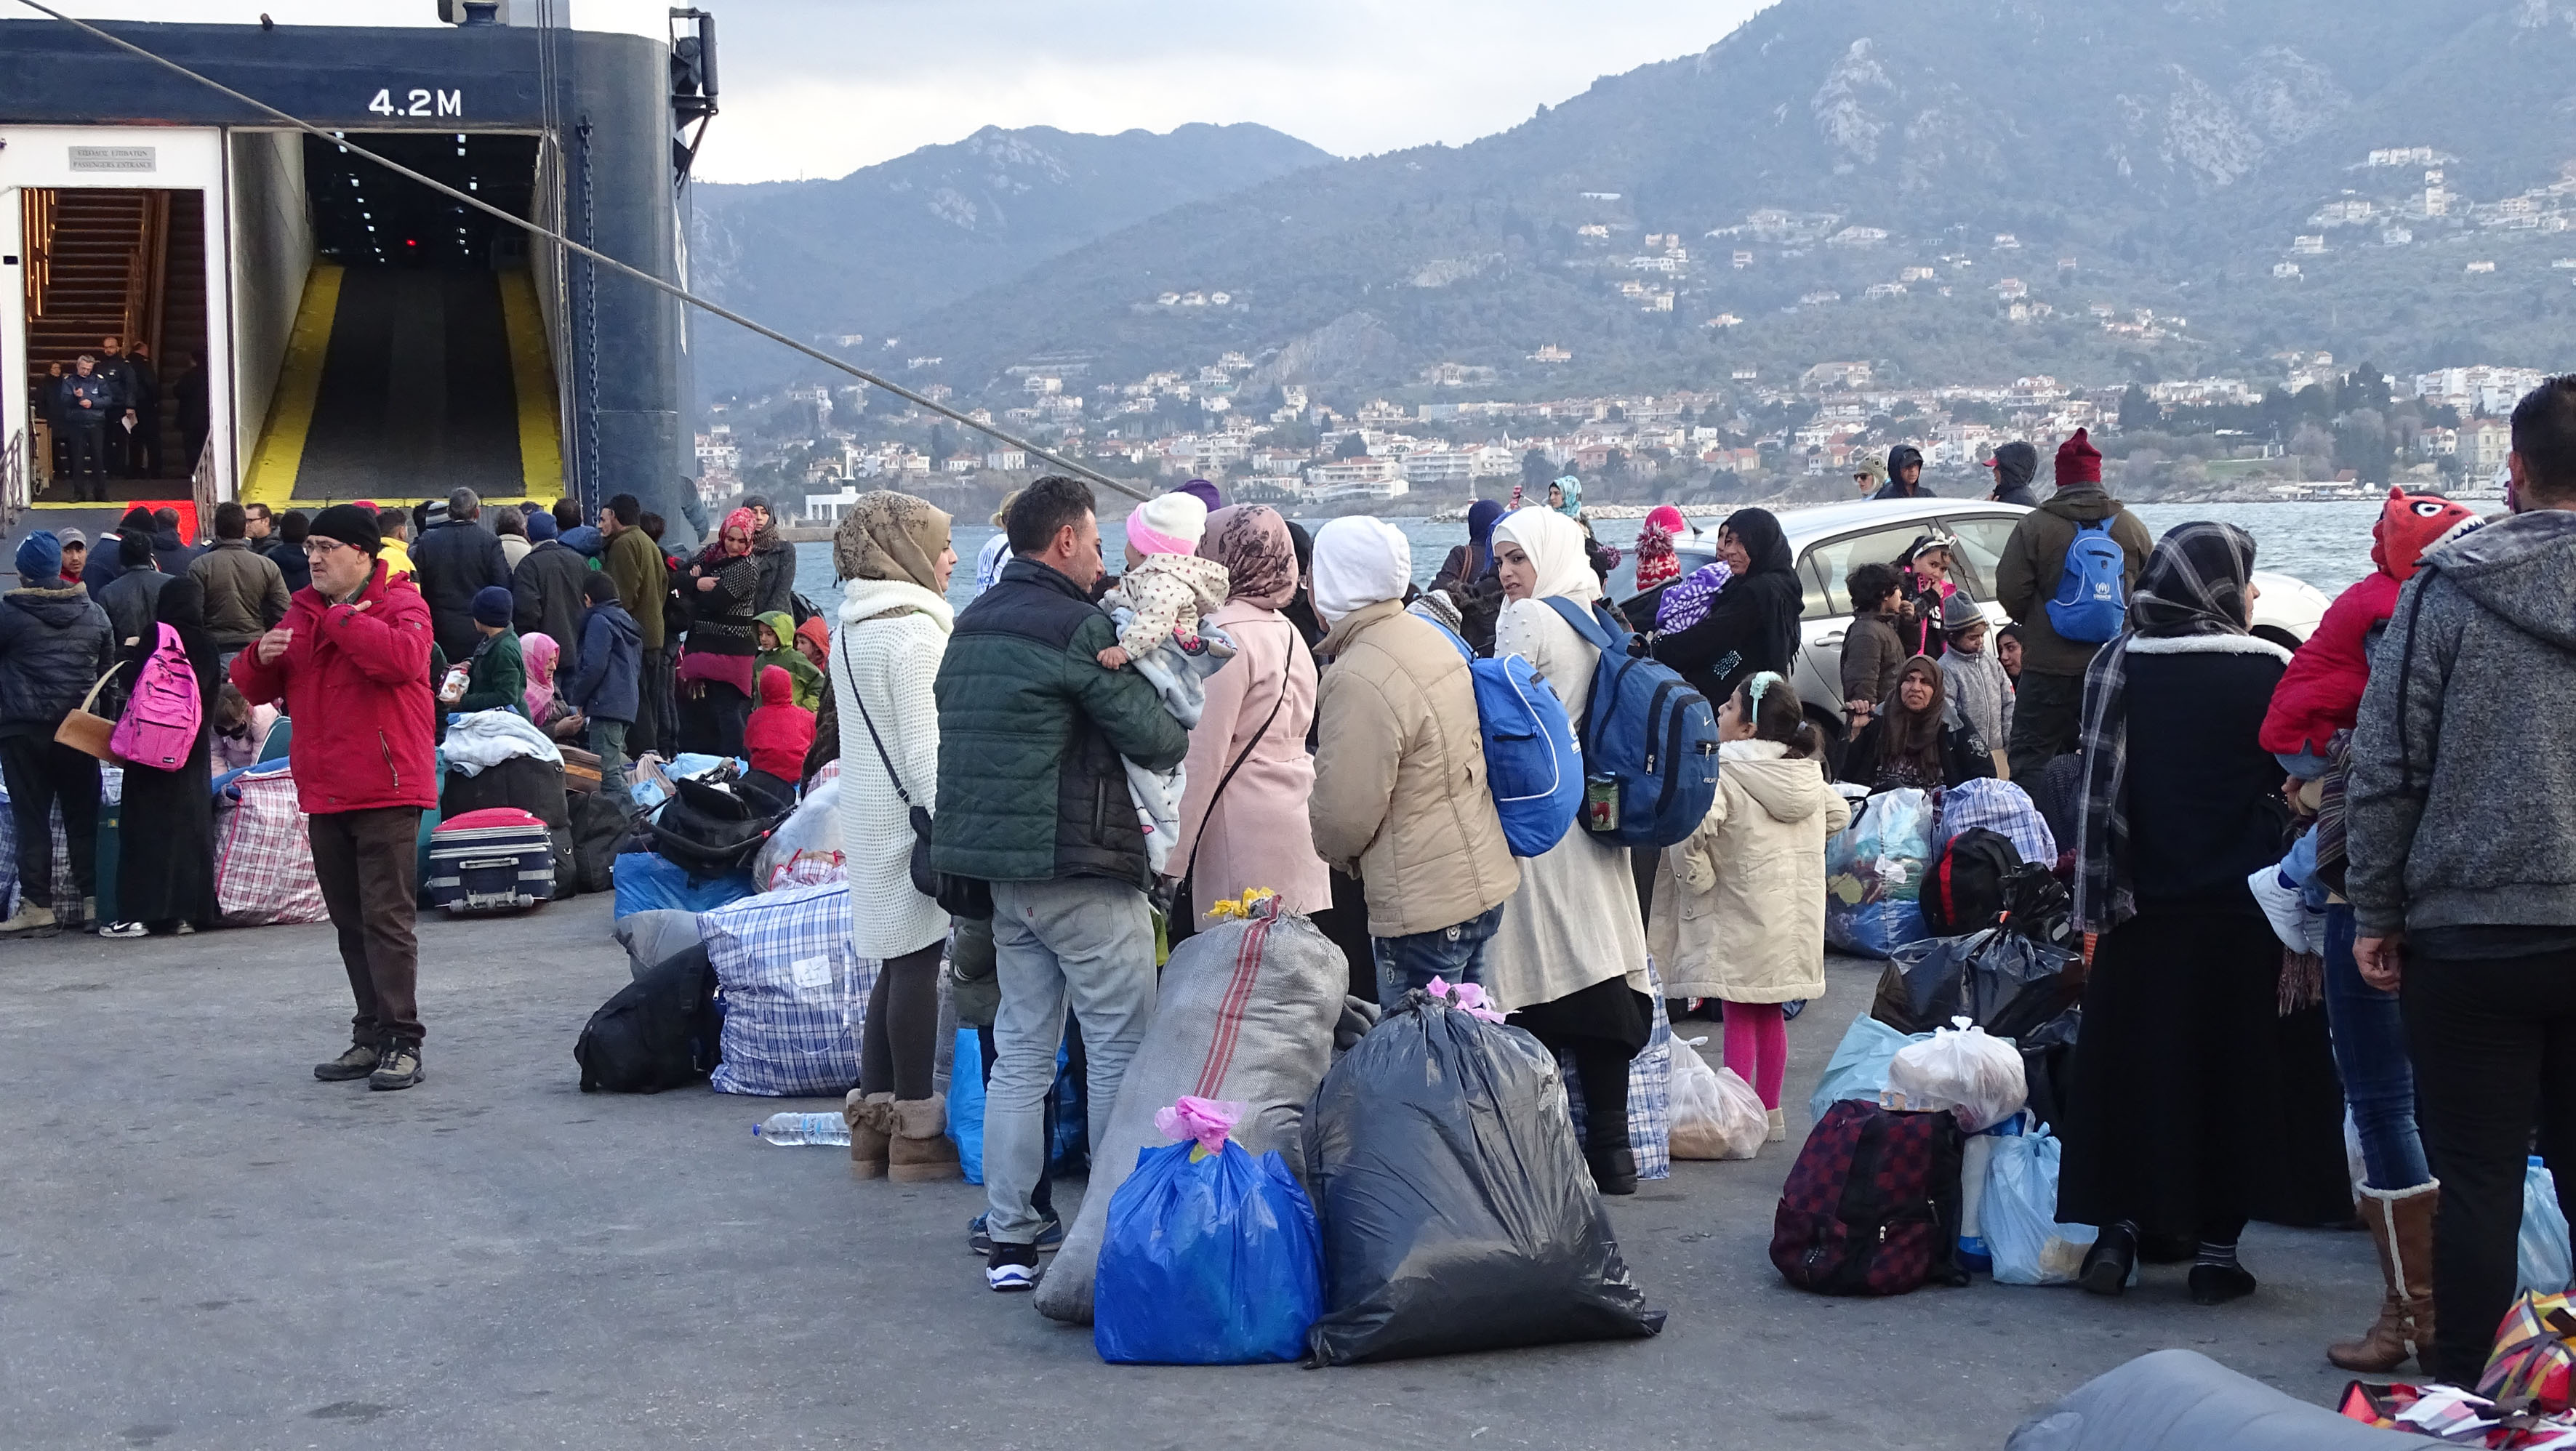 Σε κατάσταση κόκκινου συναγερμού η κυβέρνηση για το προσφυγικό μεταναστευτικό